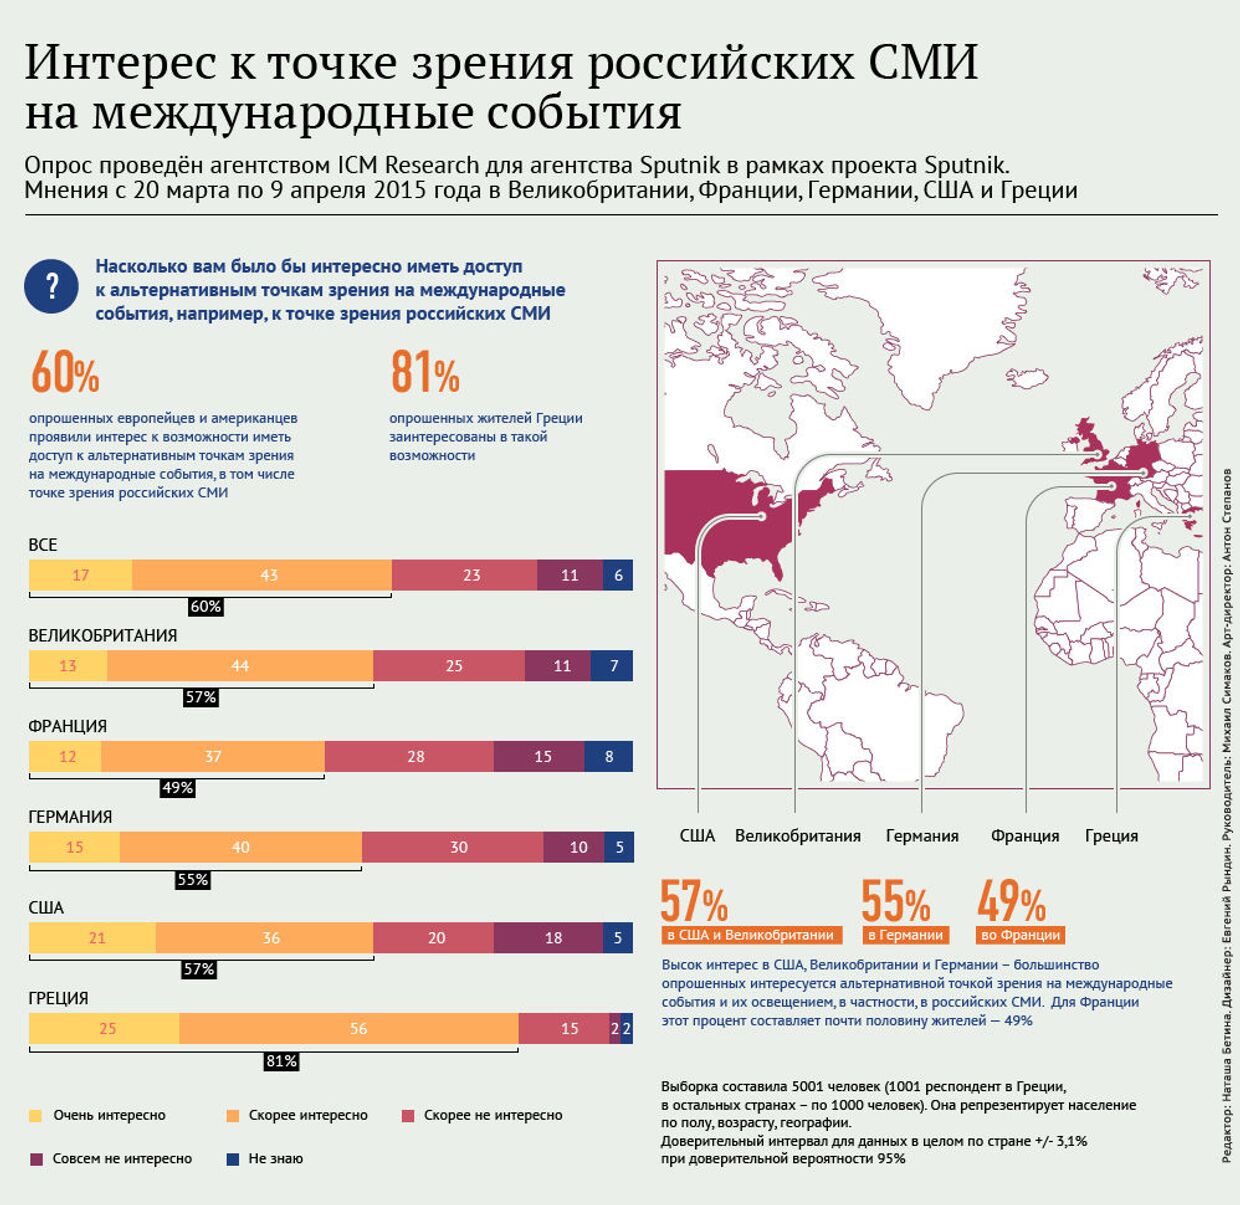 Интерес европейцев к точке зрения российских СМИ